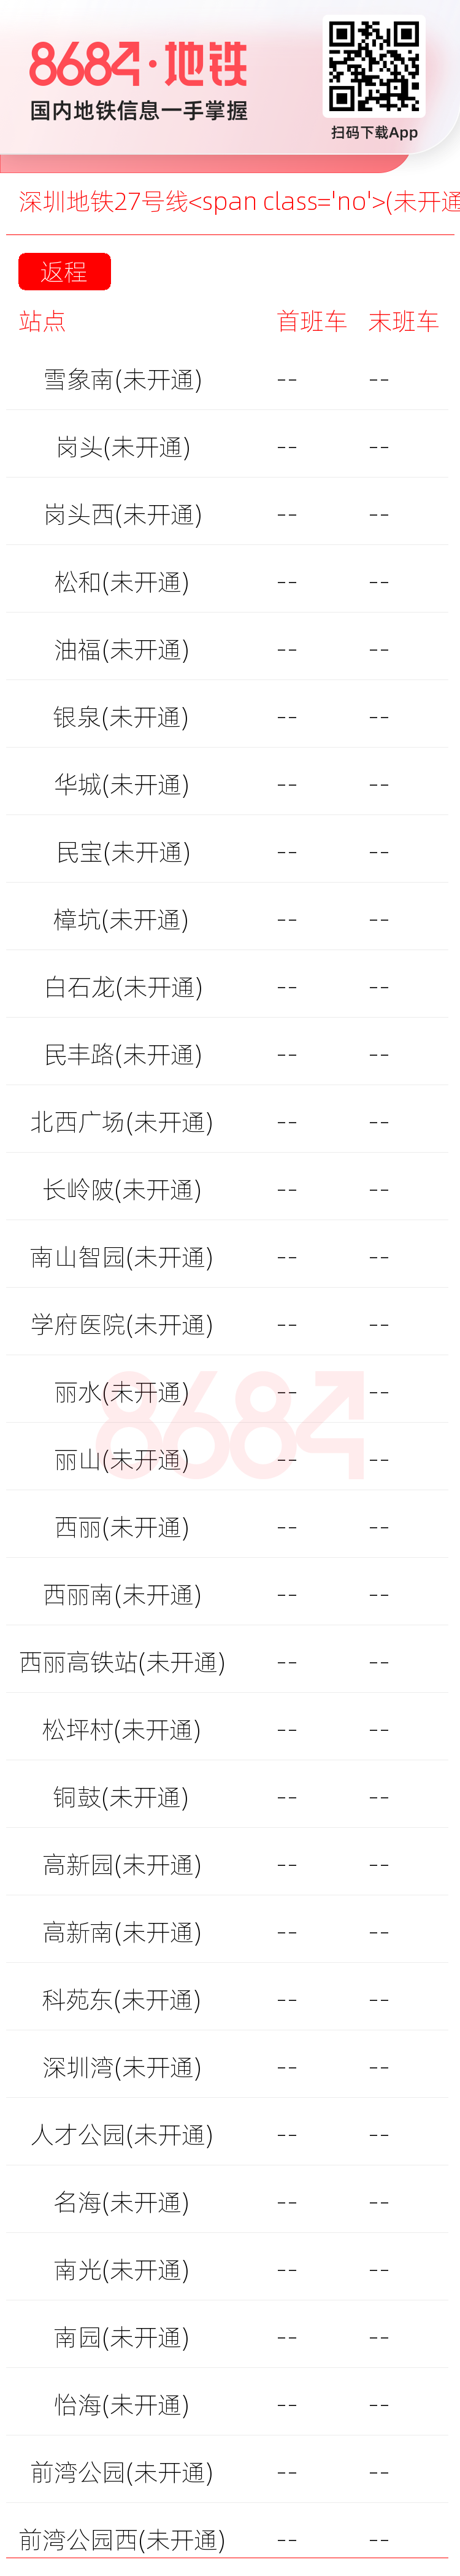 深圳地铁27号线<span class='no'>(未开通)</span>运营时间表